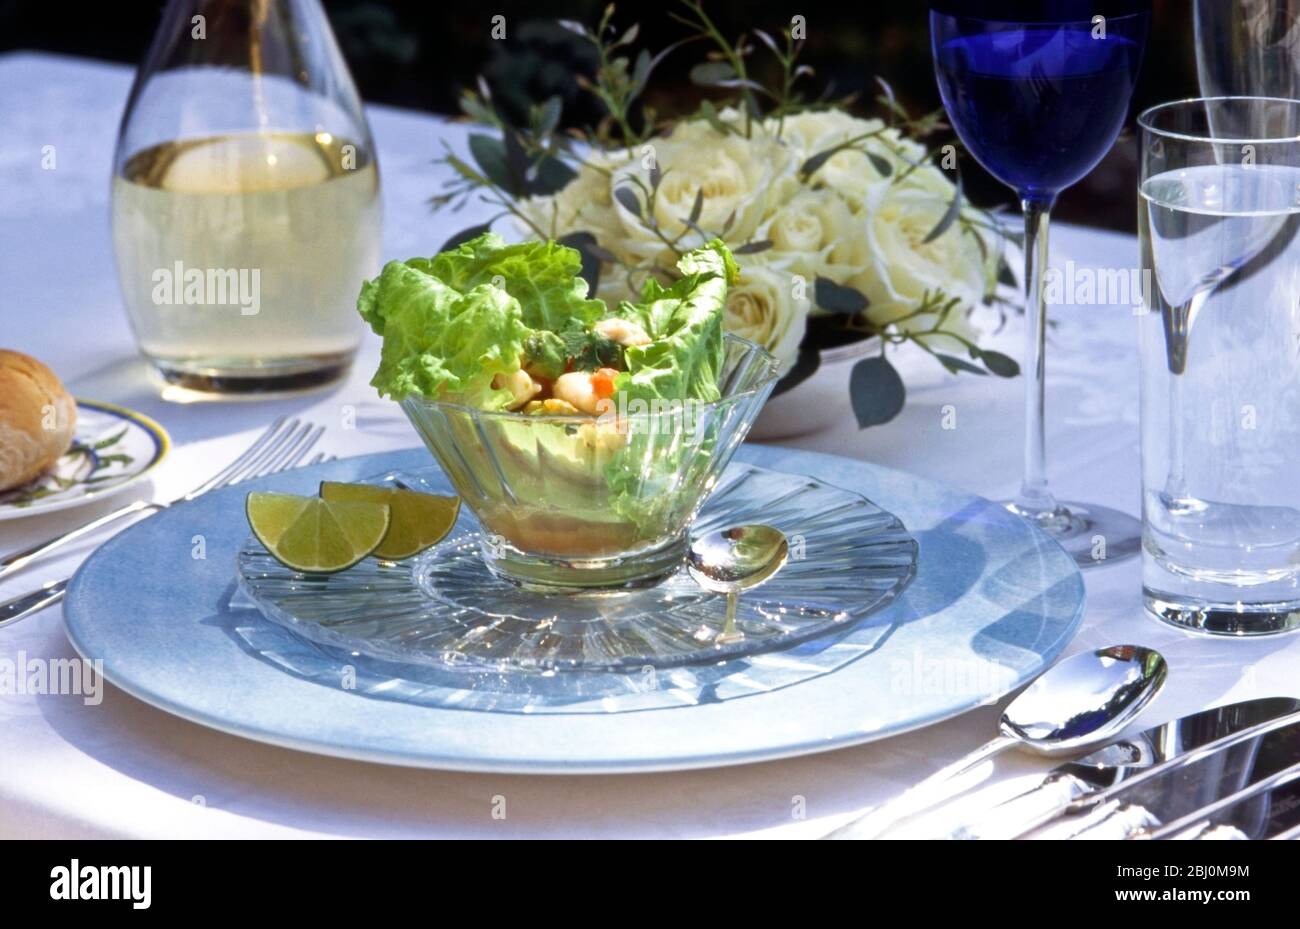 Meeresfrüchte-Salat in Kristallglas Schüssel in formellen Tisch-Einstellung im Freien - Stockfoto